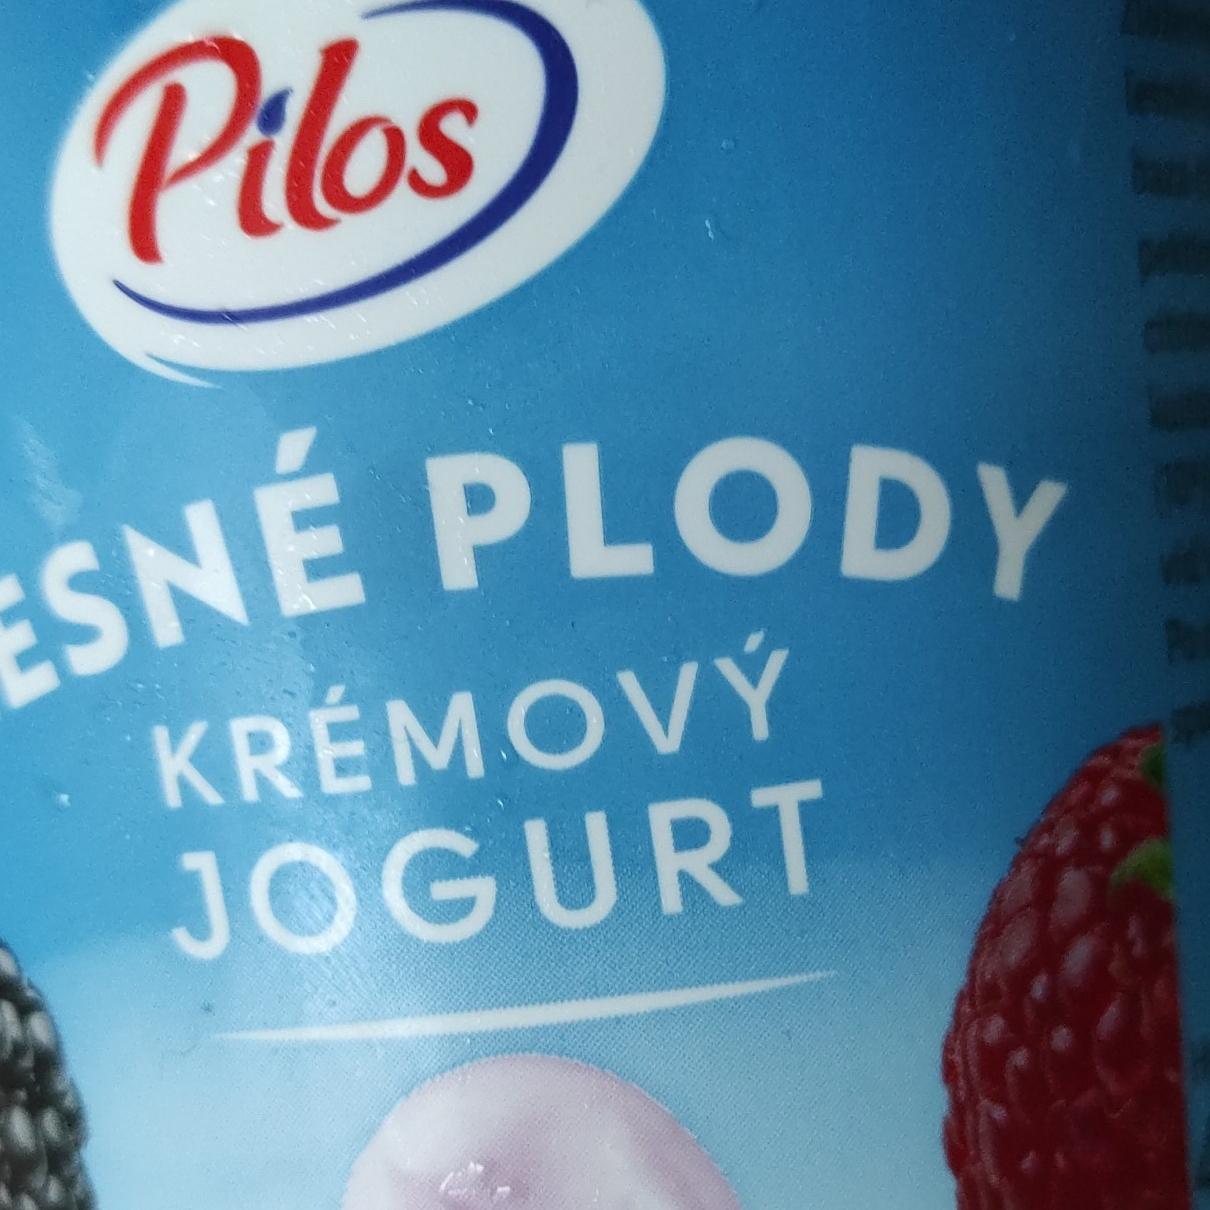 Fotografie - Lesné plody Krémový jogurt Pilos